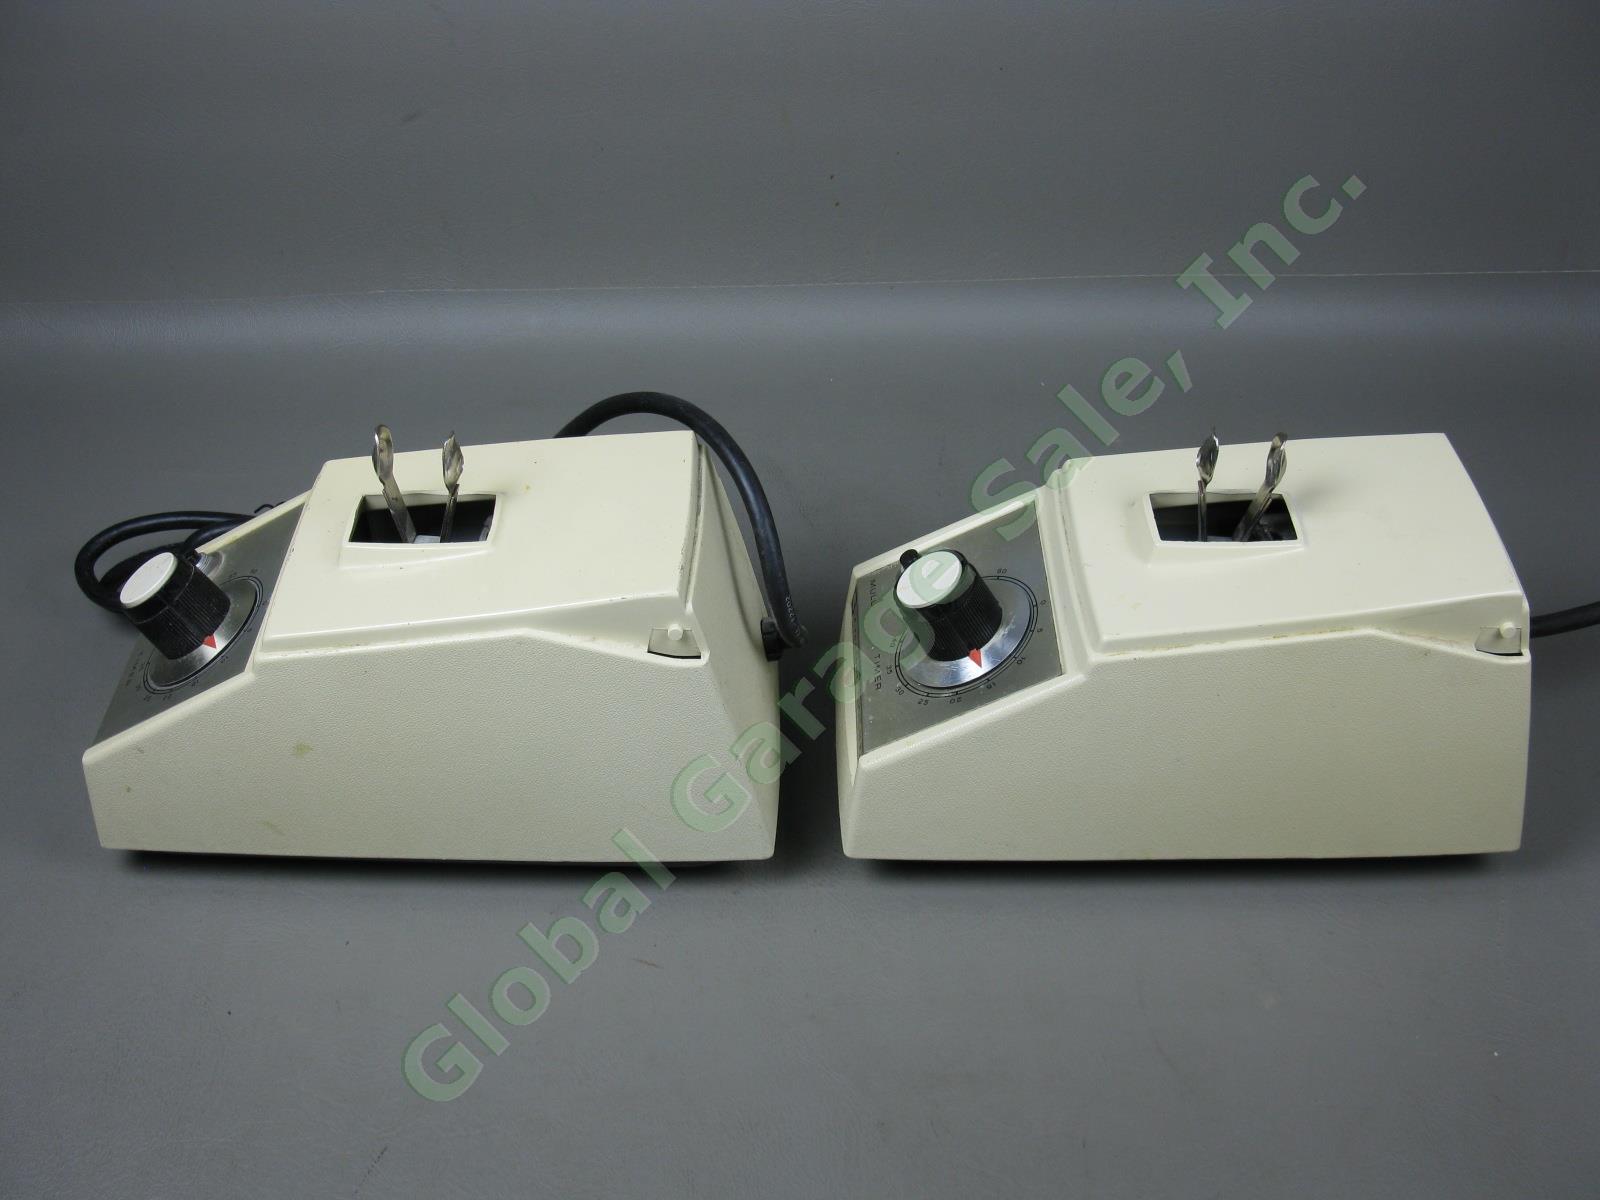 2x Crescent WIG-L-BUG SC-40 Dental Amalgamator Mixer Shakers Lot No Covers Lids 1